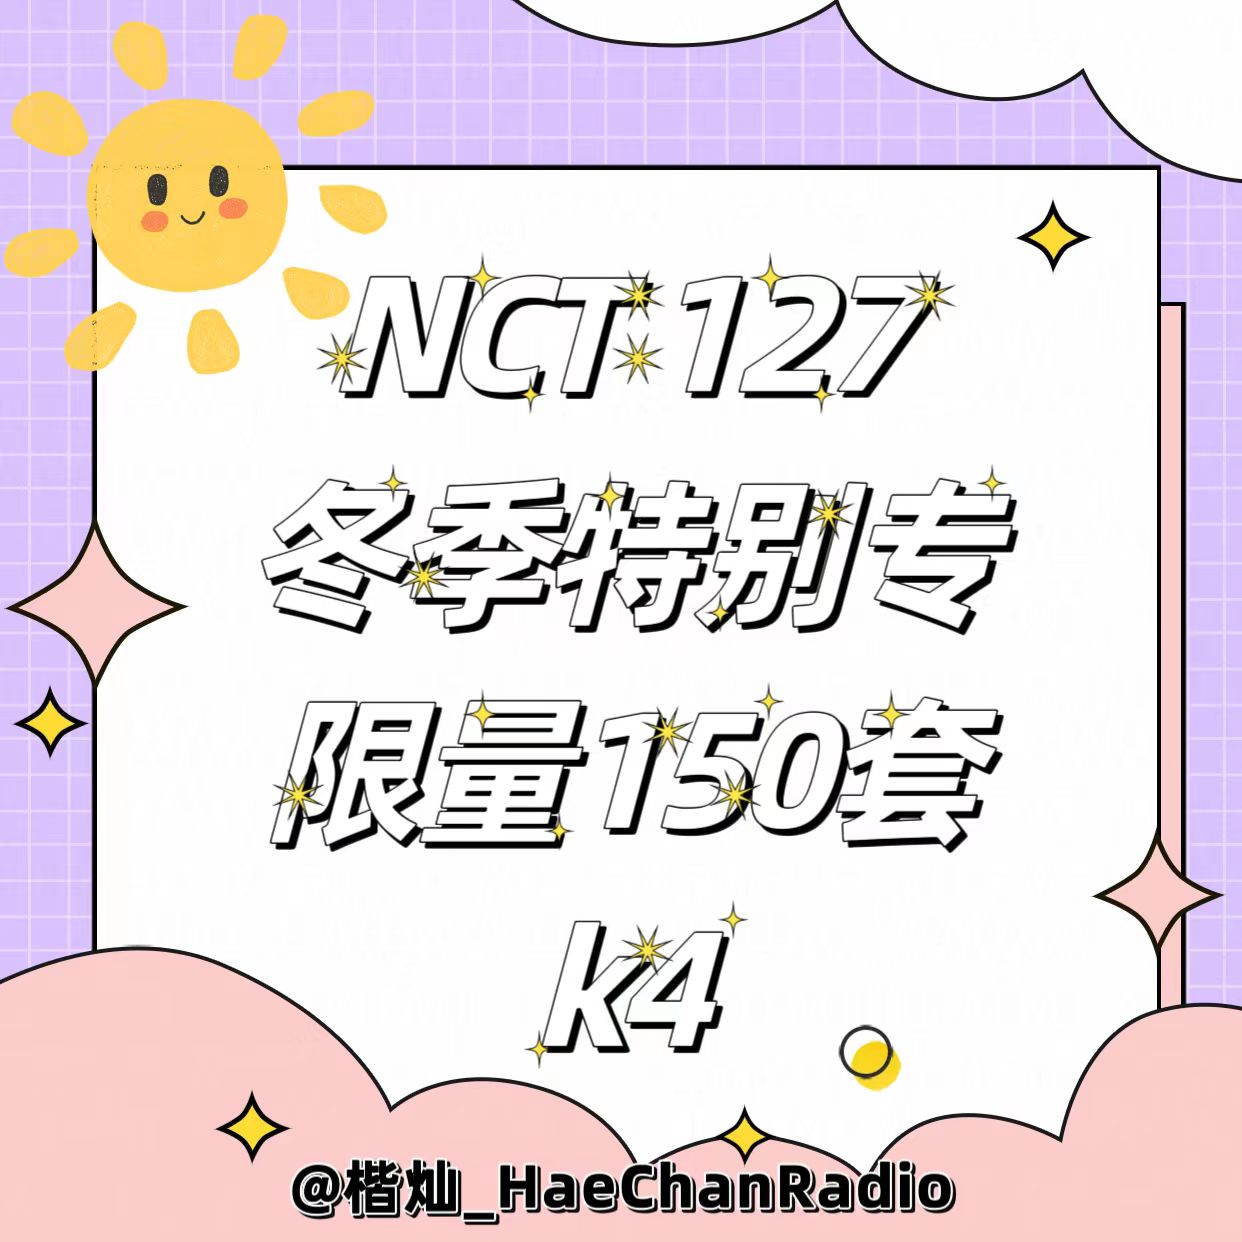 [全款 裸专][3CD SET] [Ktown4u Special Gift] NCT 127 - Winter Special Single Album [Be There For Me] (127 STEREO Ver. (Random Ver.)+SMini Ver.+SMini Ver.)